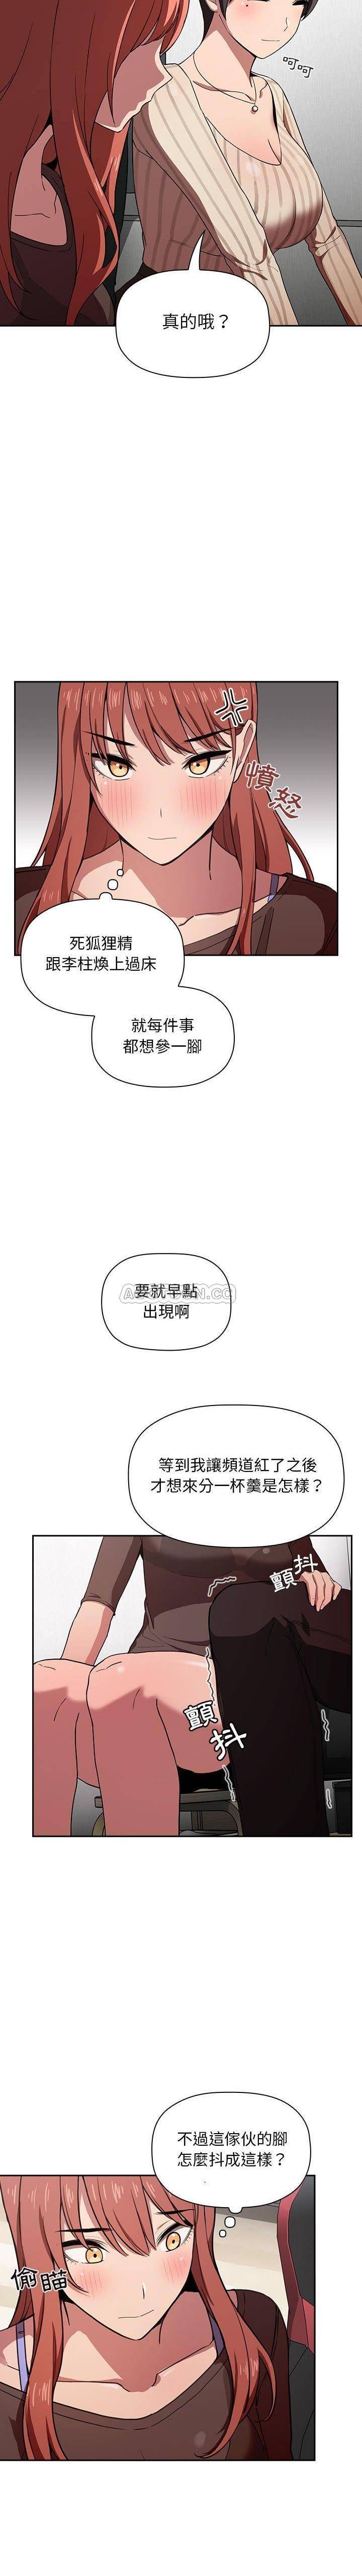 韩国污漫画 BJ的夢幻直播 第19话 20